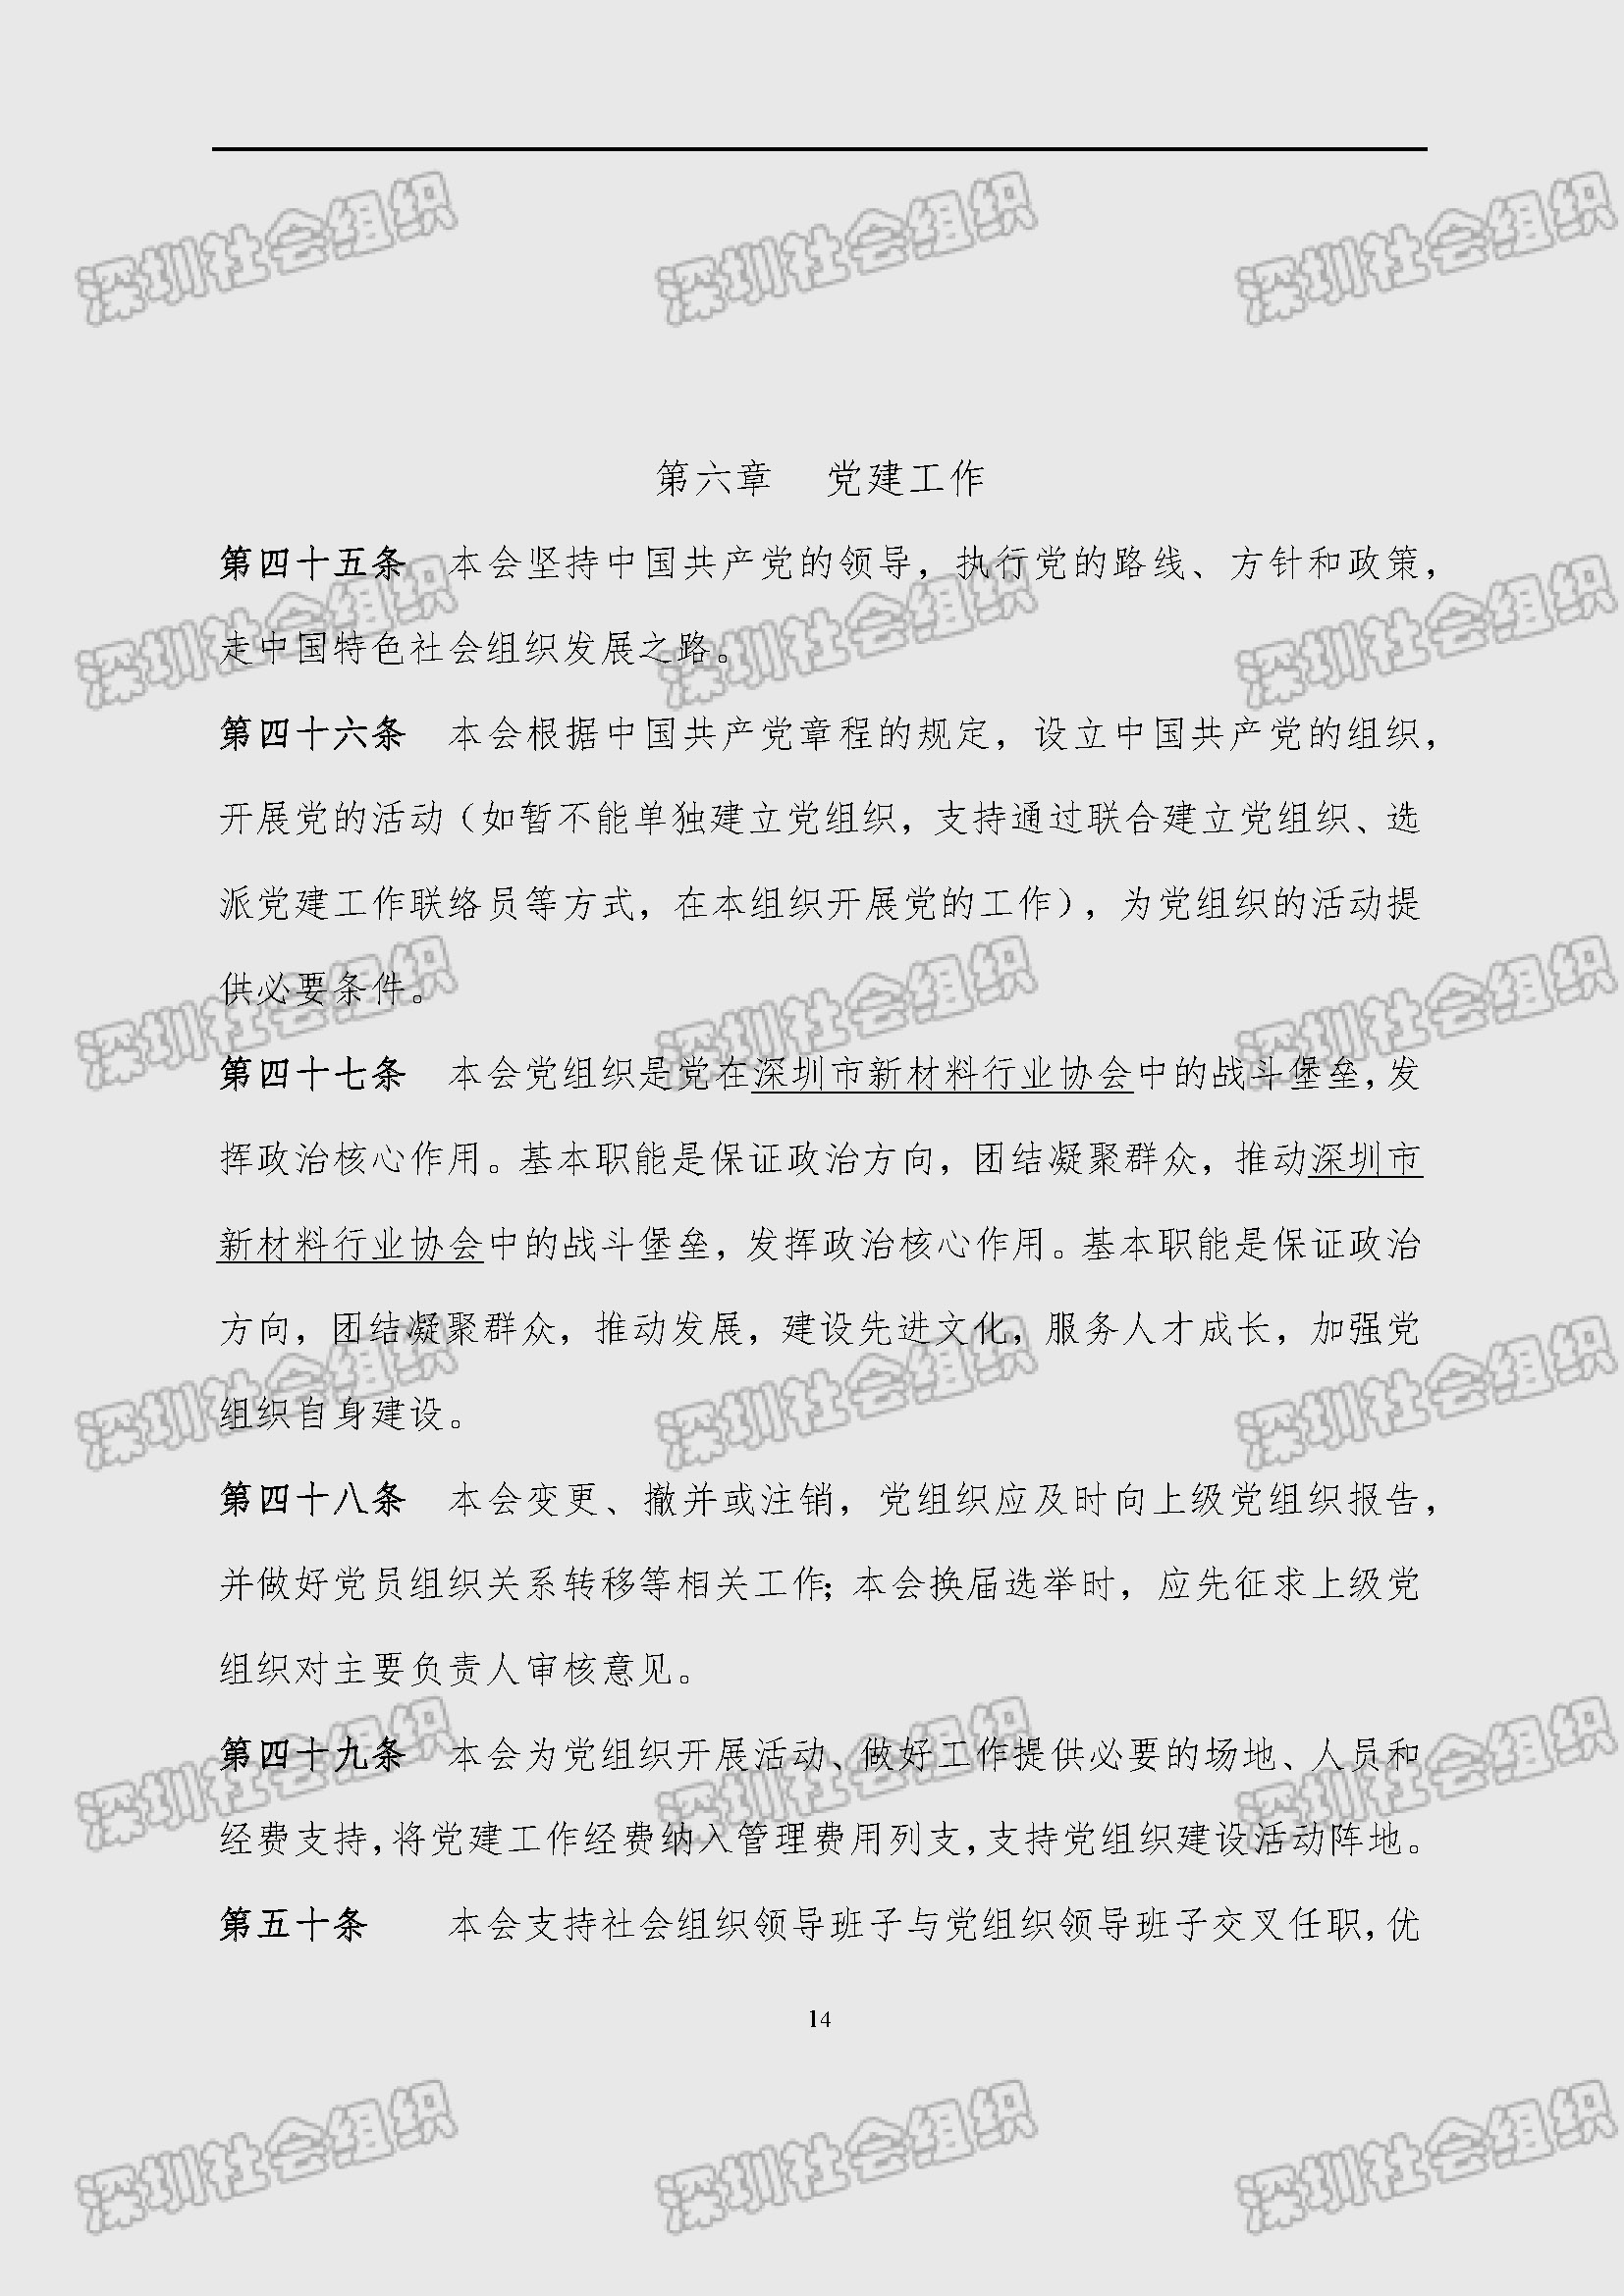 深圳市新材料行业协会章程_页面_14.jpg